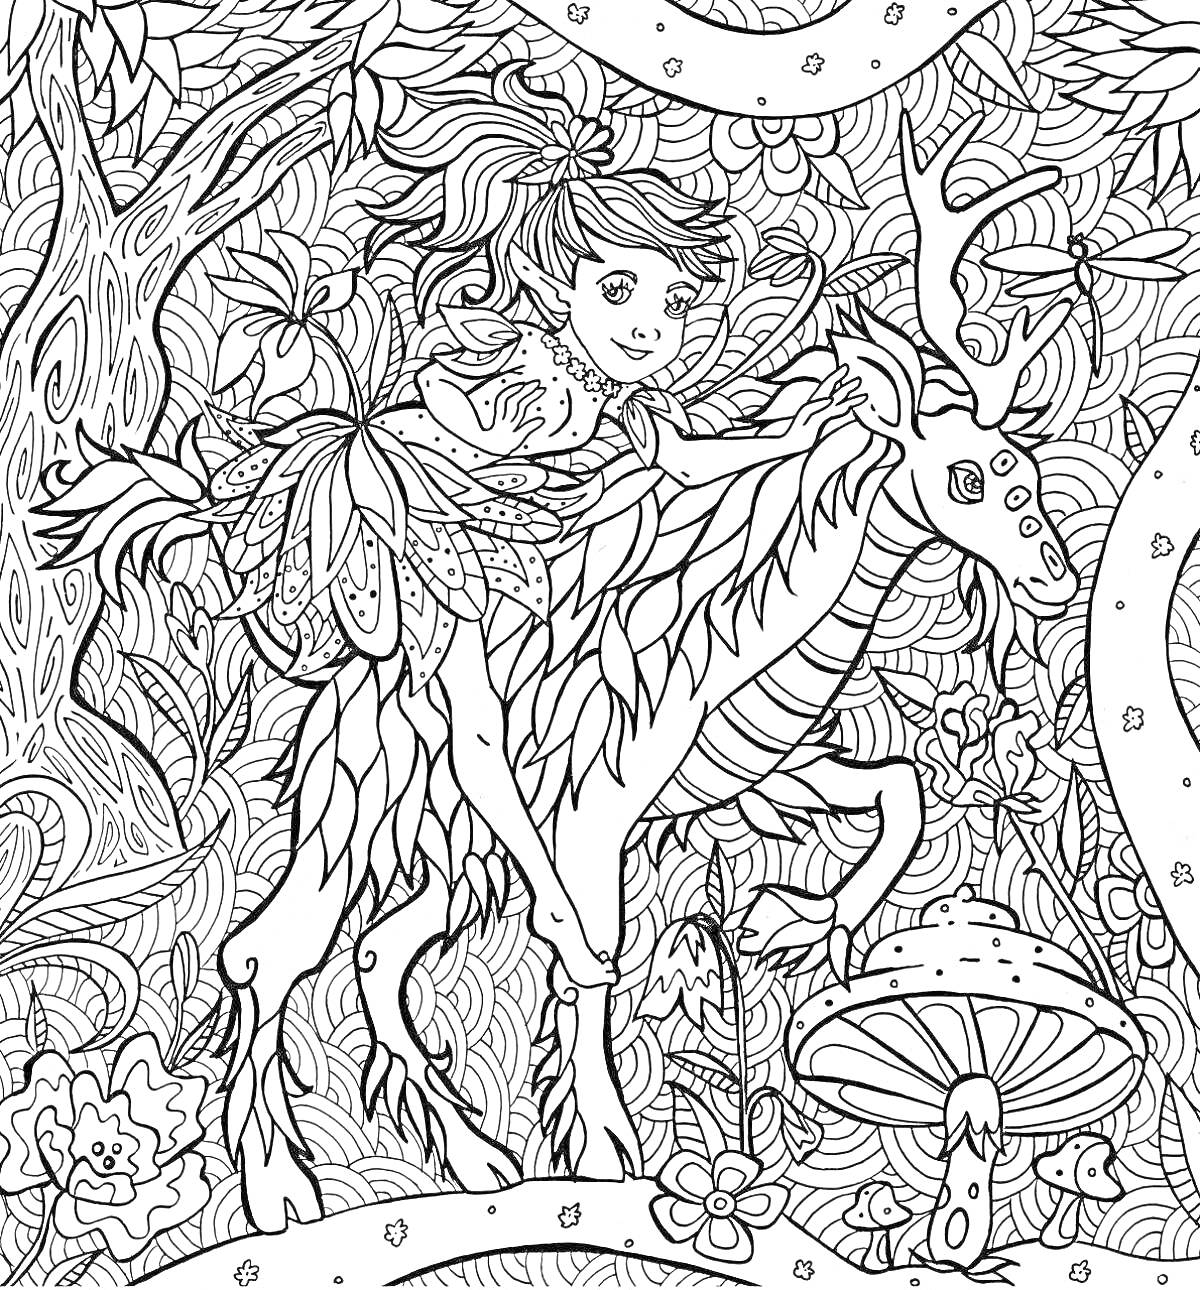 Девочка верхом на олене в волшебном лесу с грибами и цветами